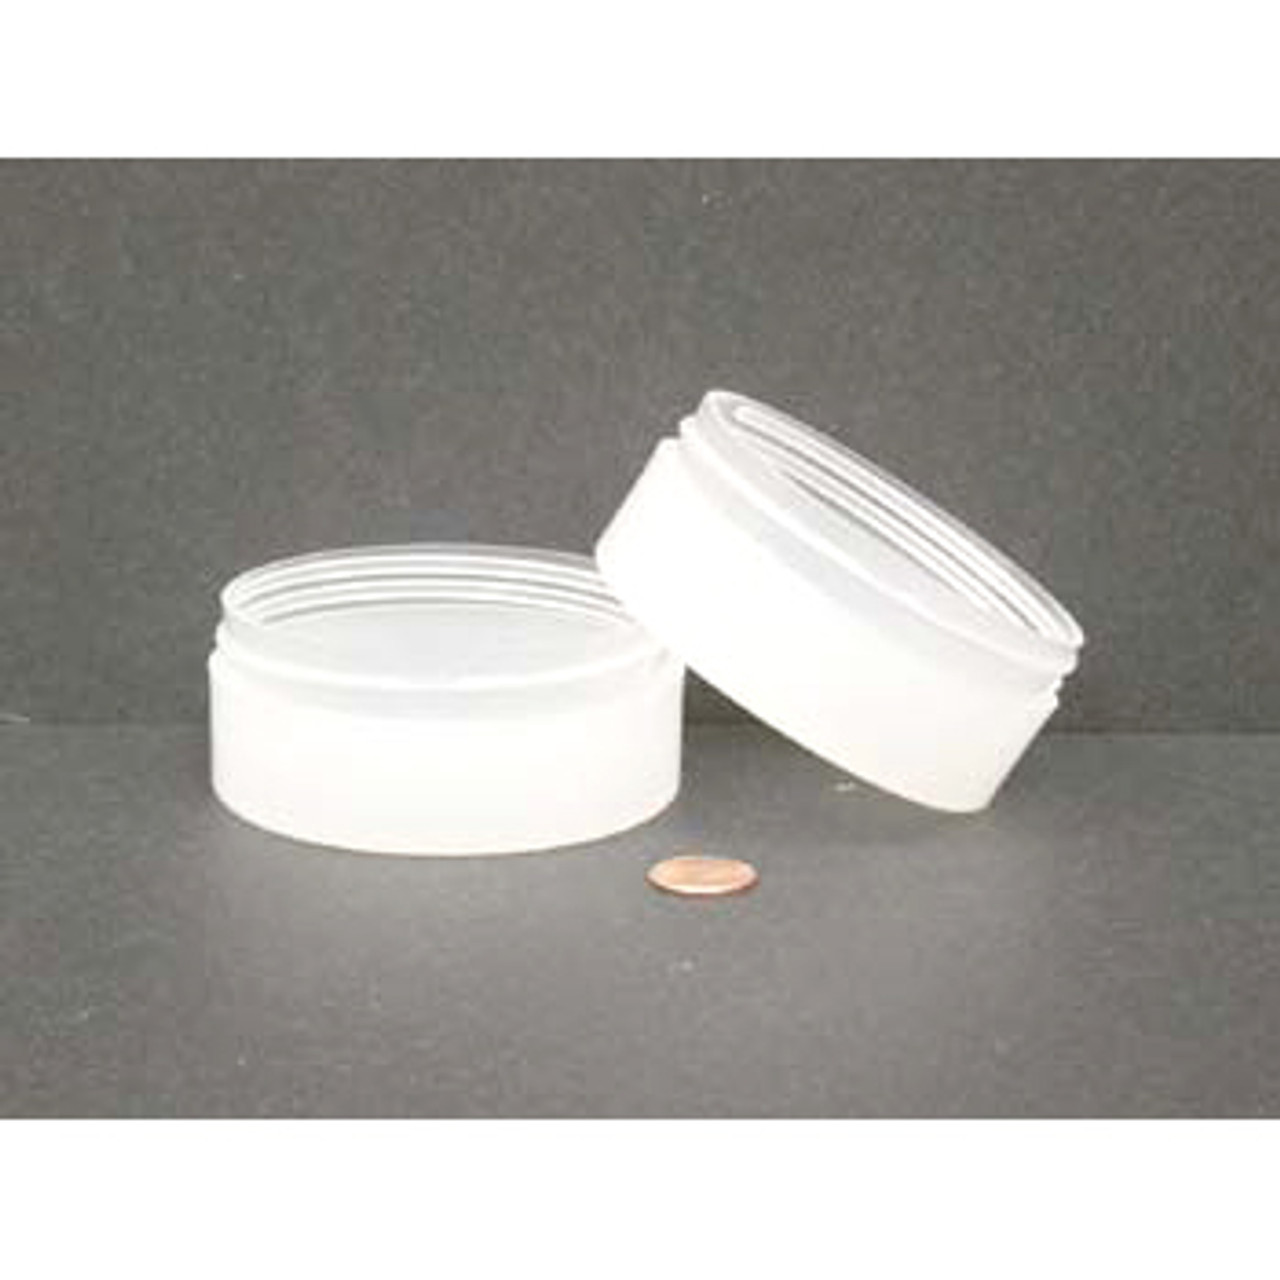 4 oz White Polypropylene Single Wall Jar 70-400